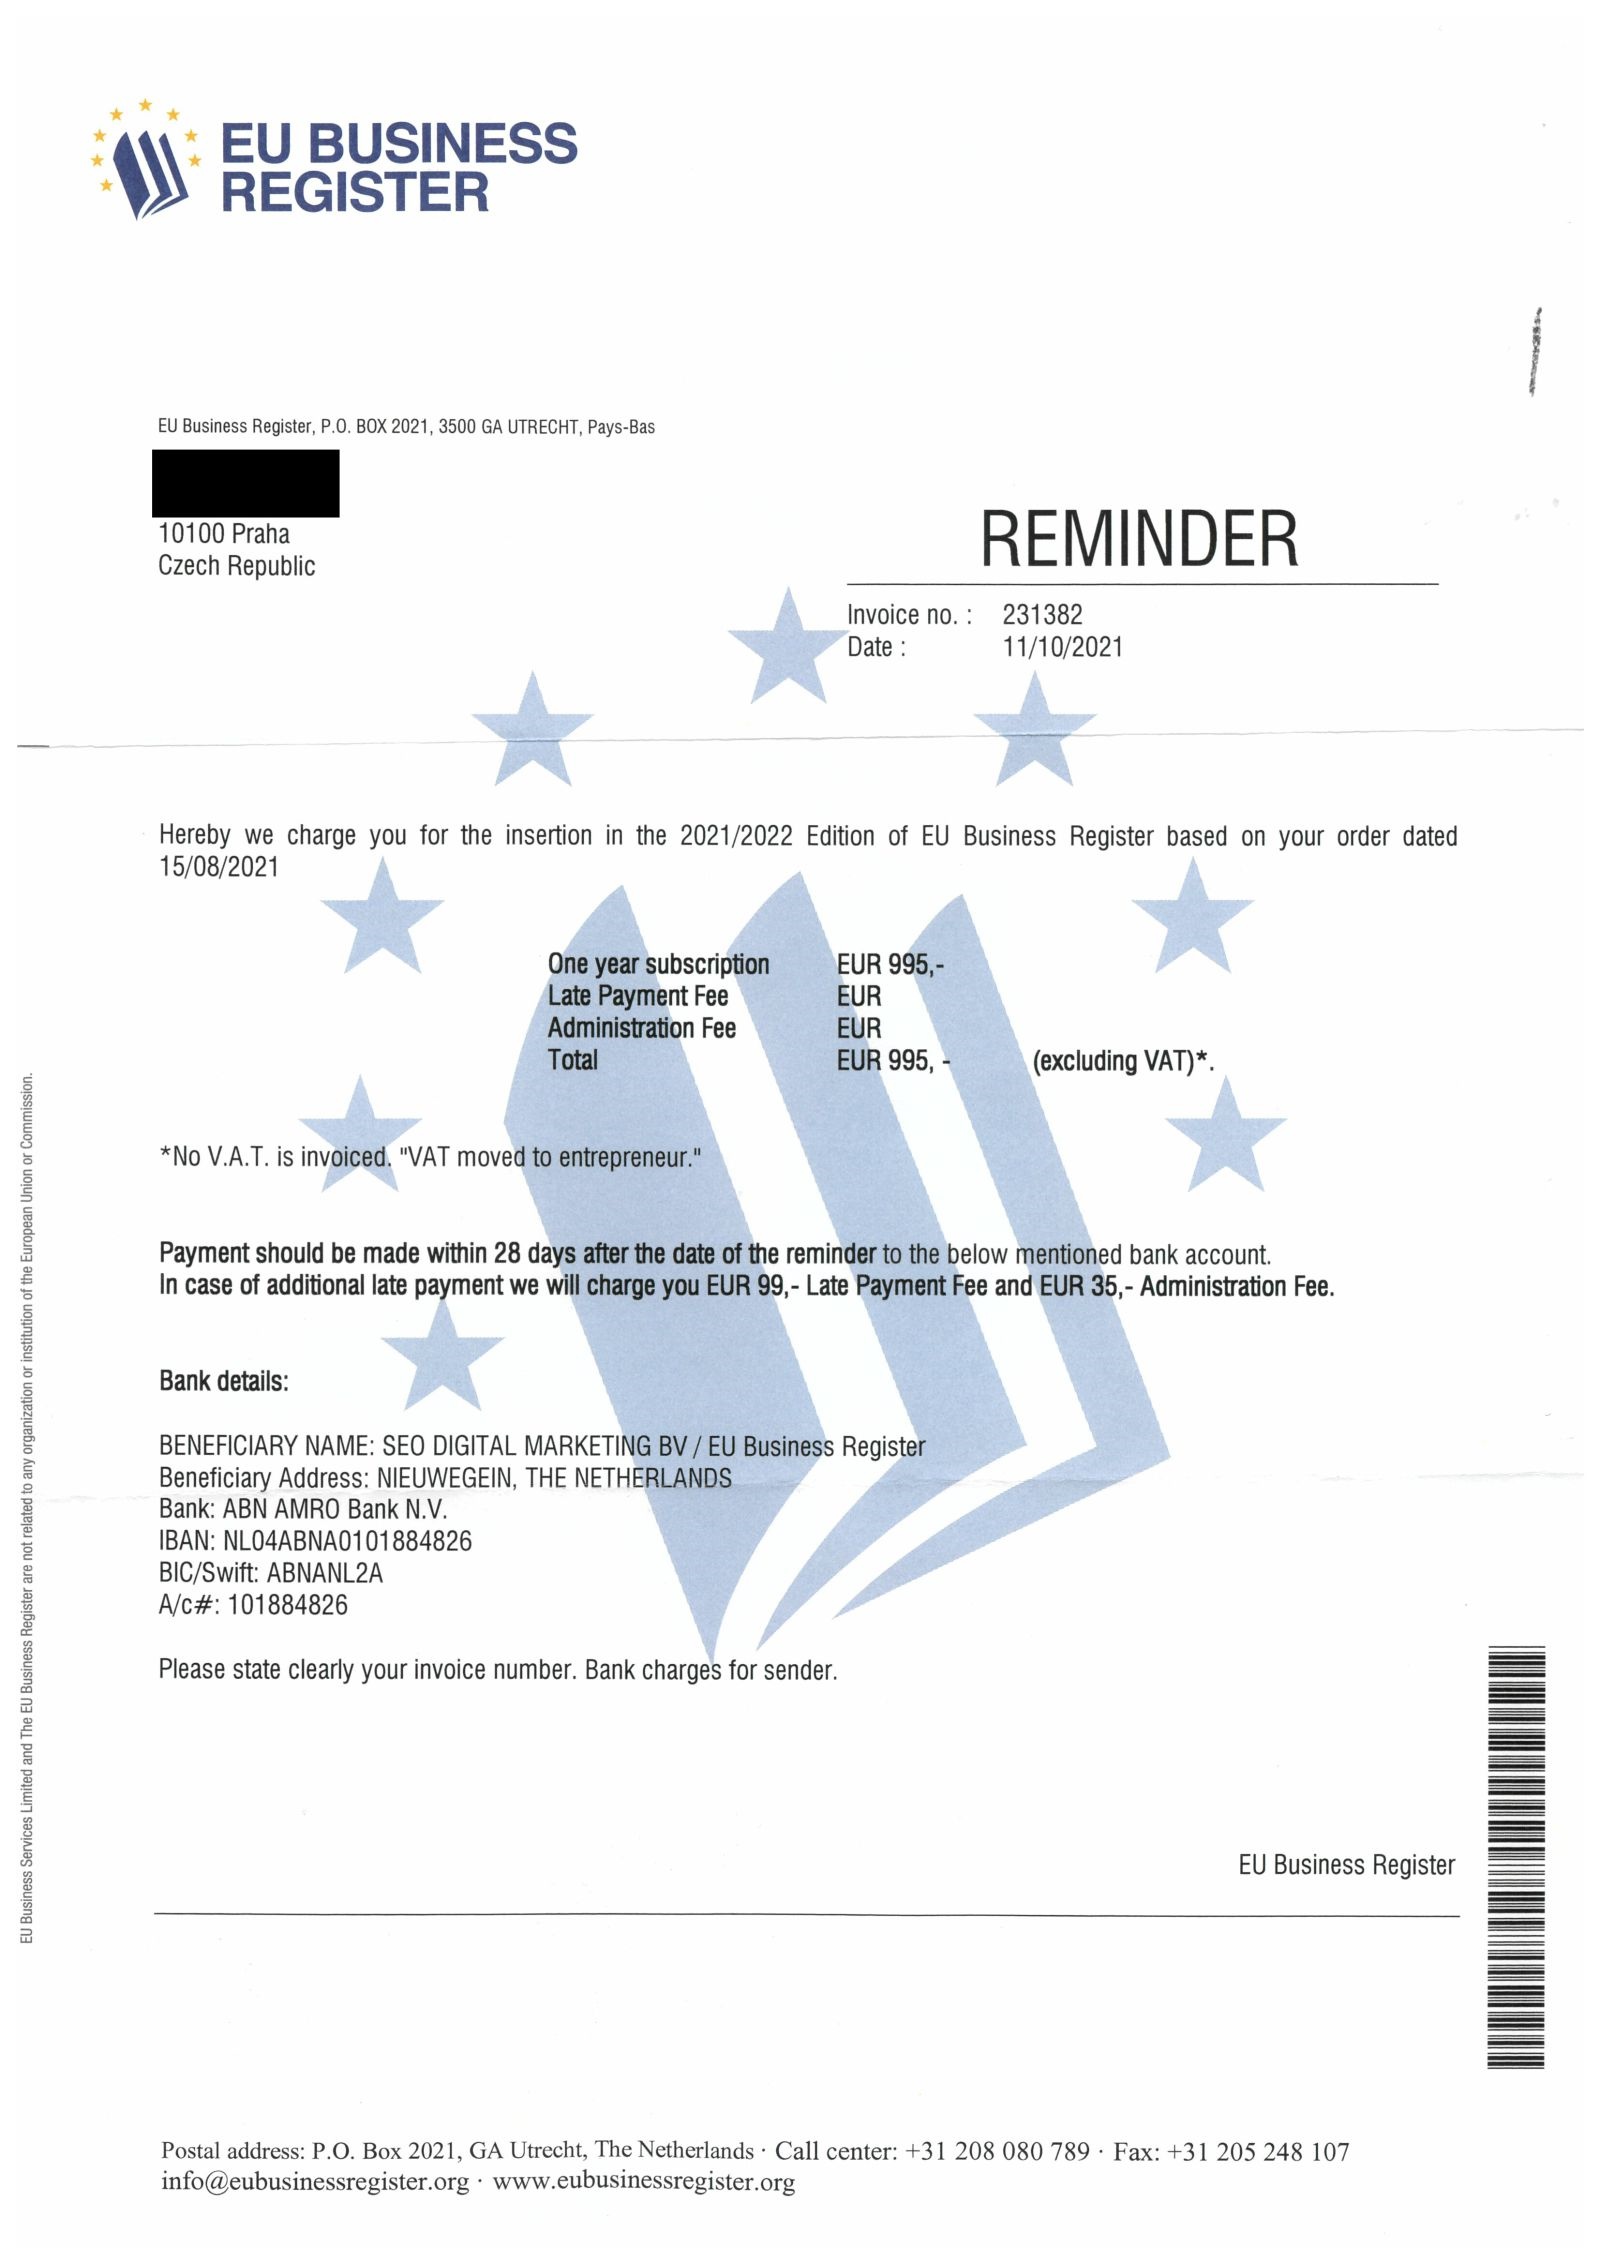 “EU Business Register” spam: Čo sa stane, keď nezaplatíte